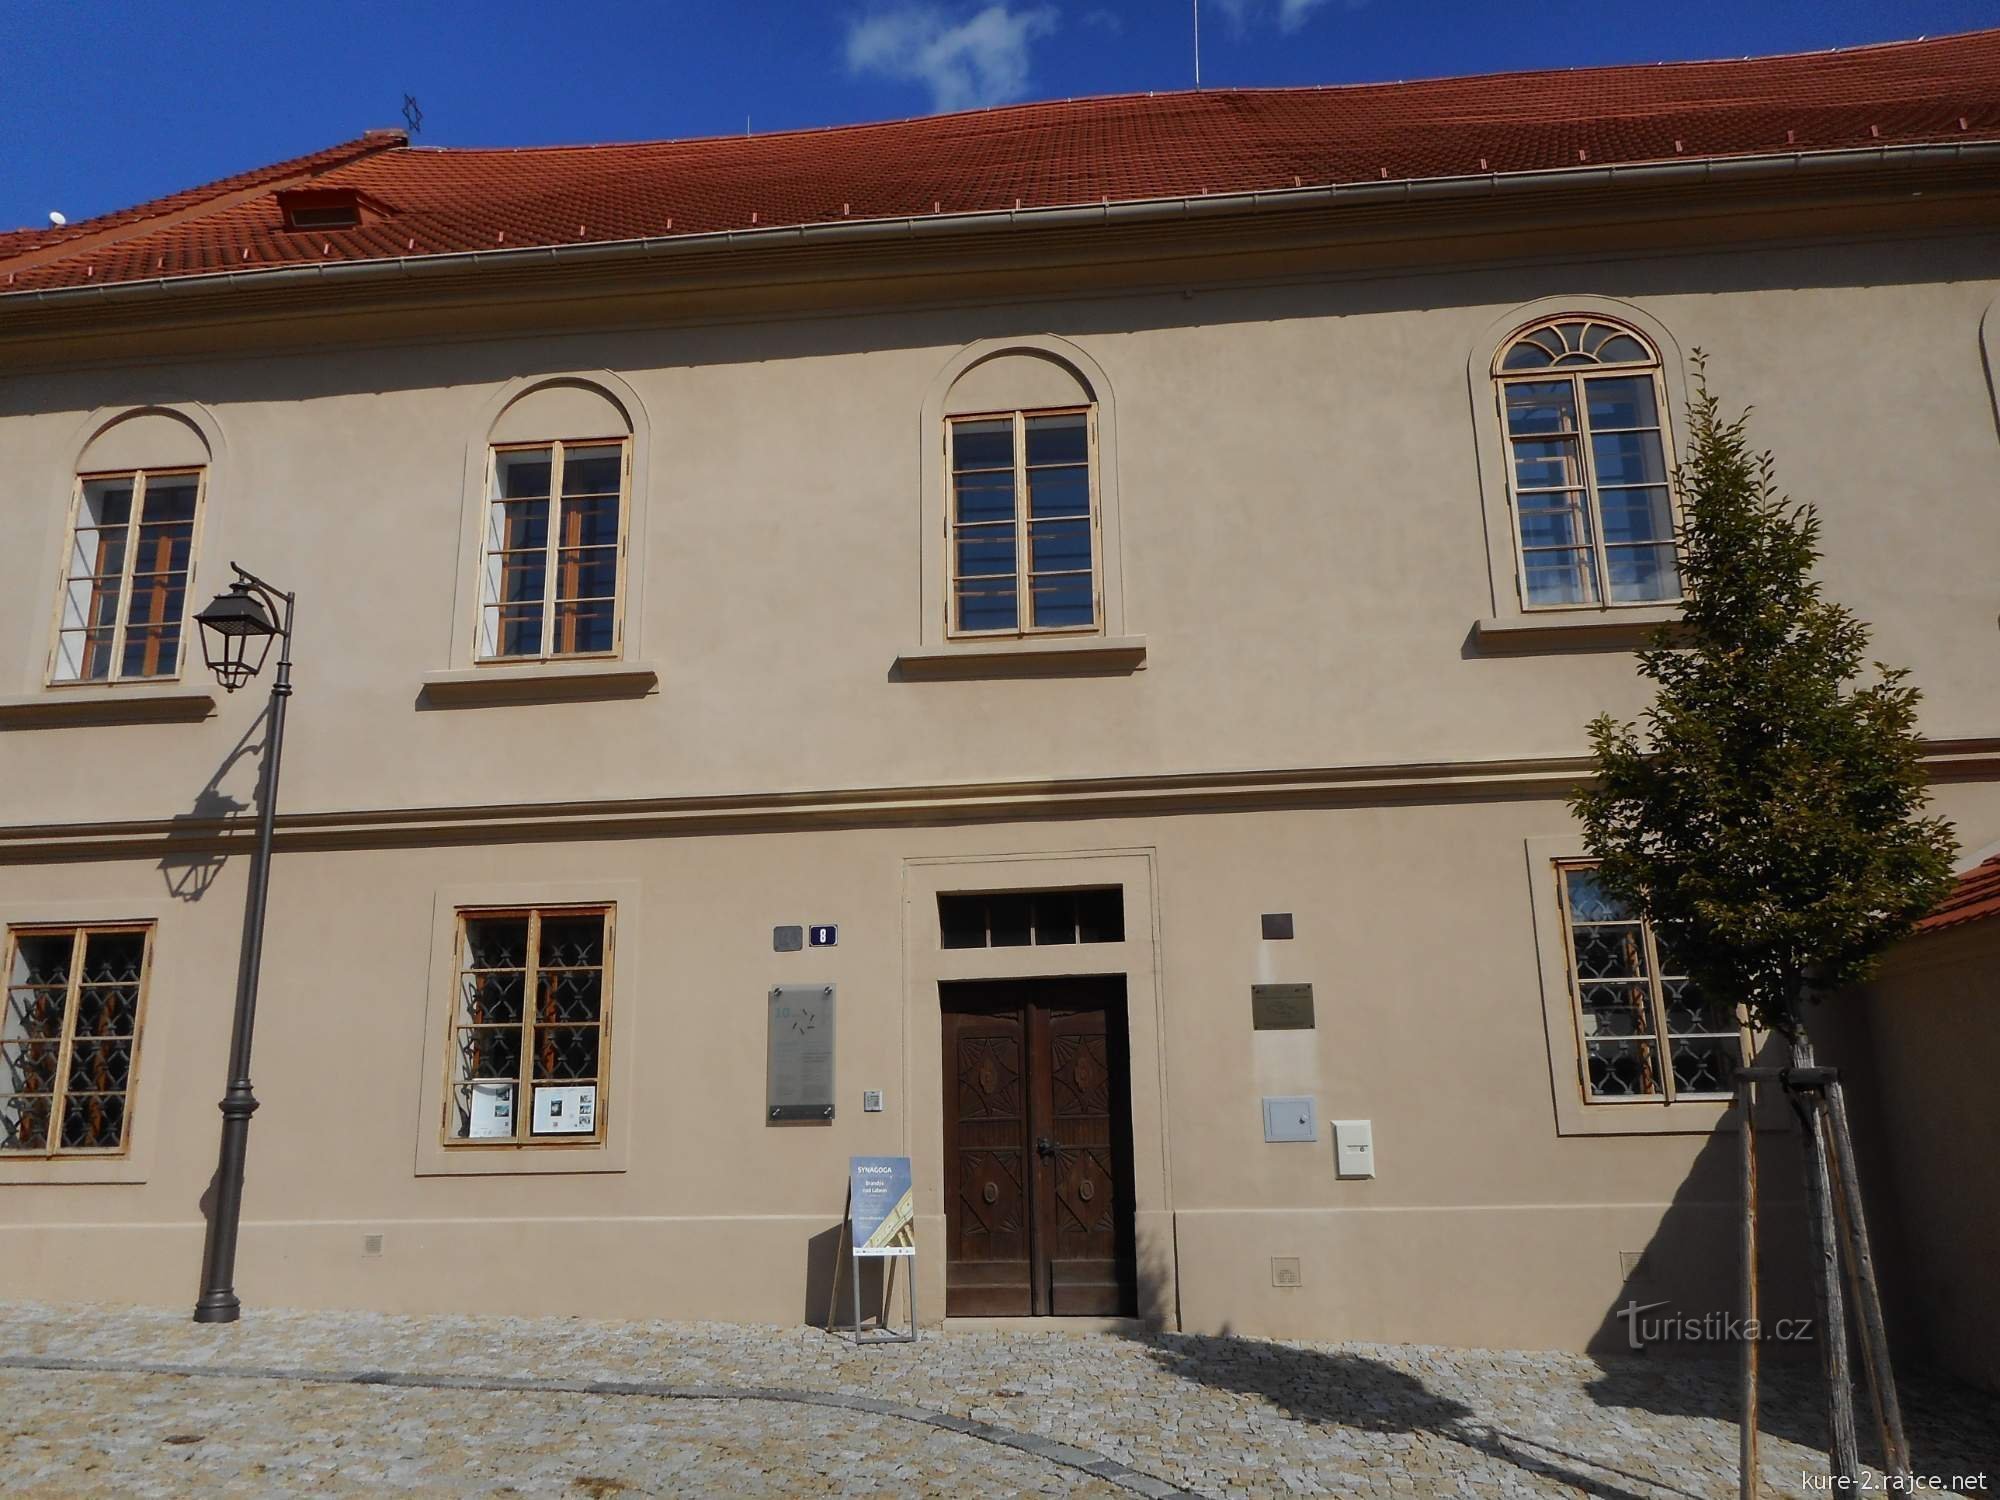 Oggi la sinagoga funge da museo ebraico